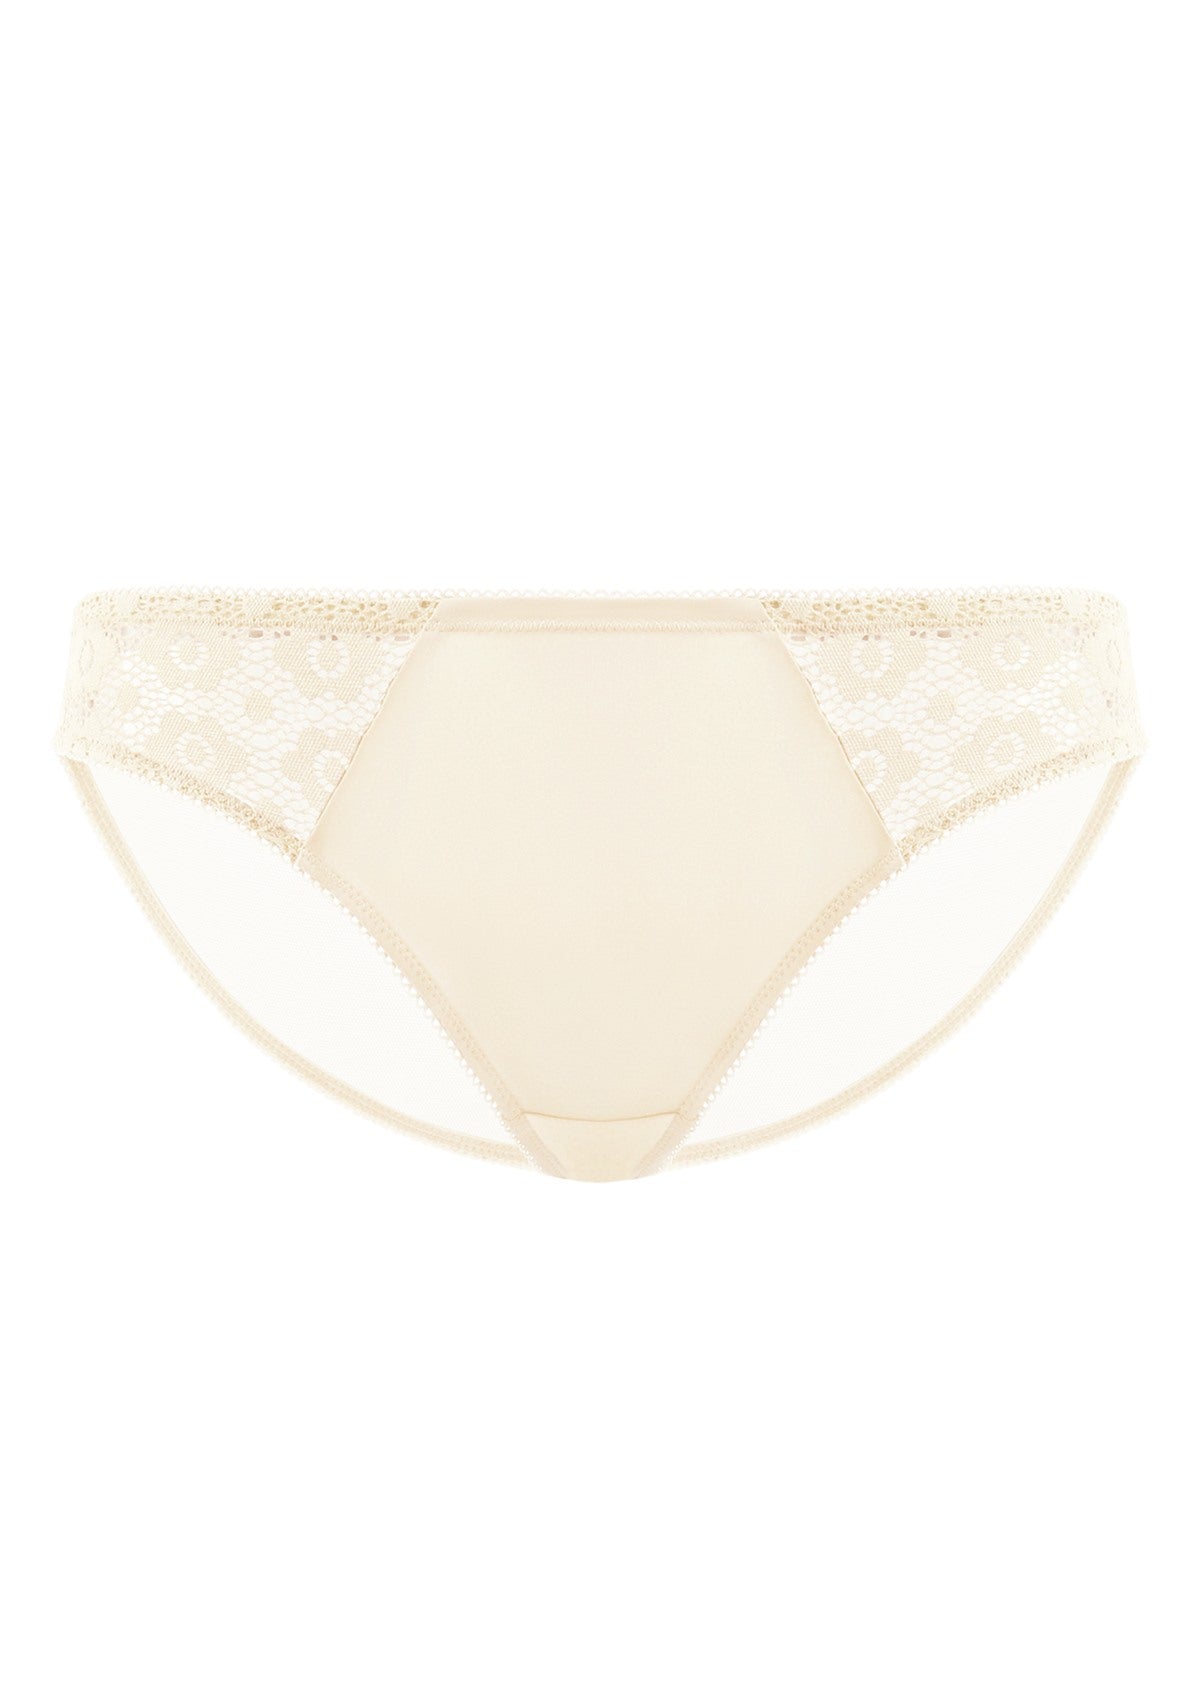 HSIA Serena Comfortable Trendy Lace Trim Bikini Underwear - L / Champagne